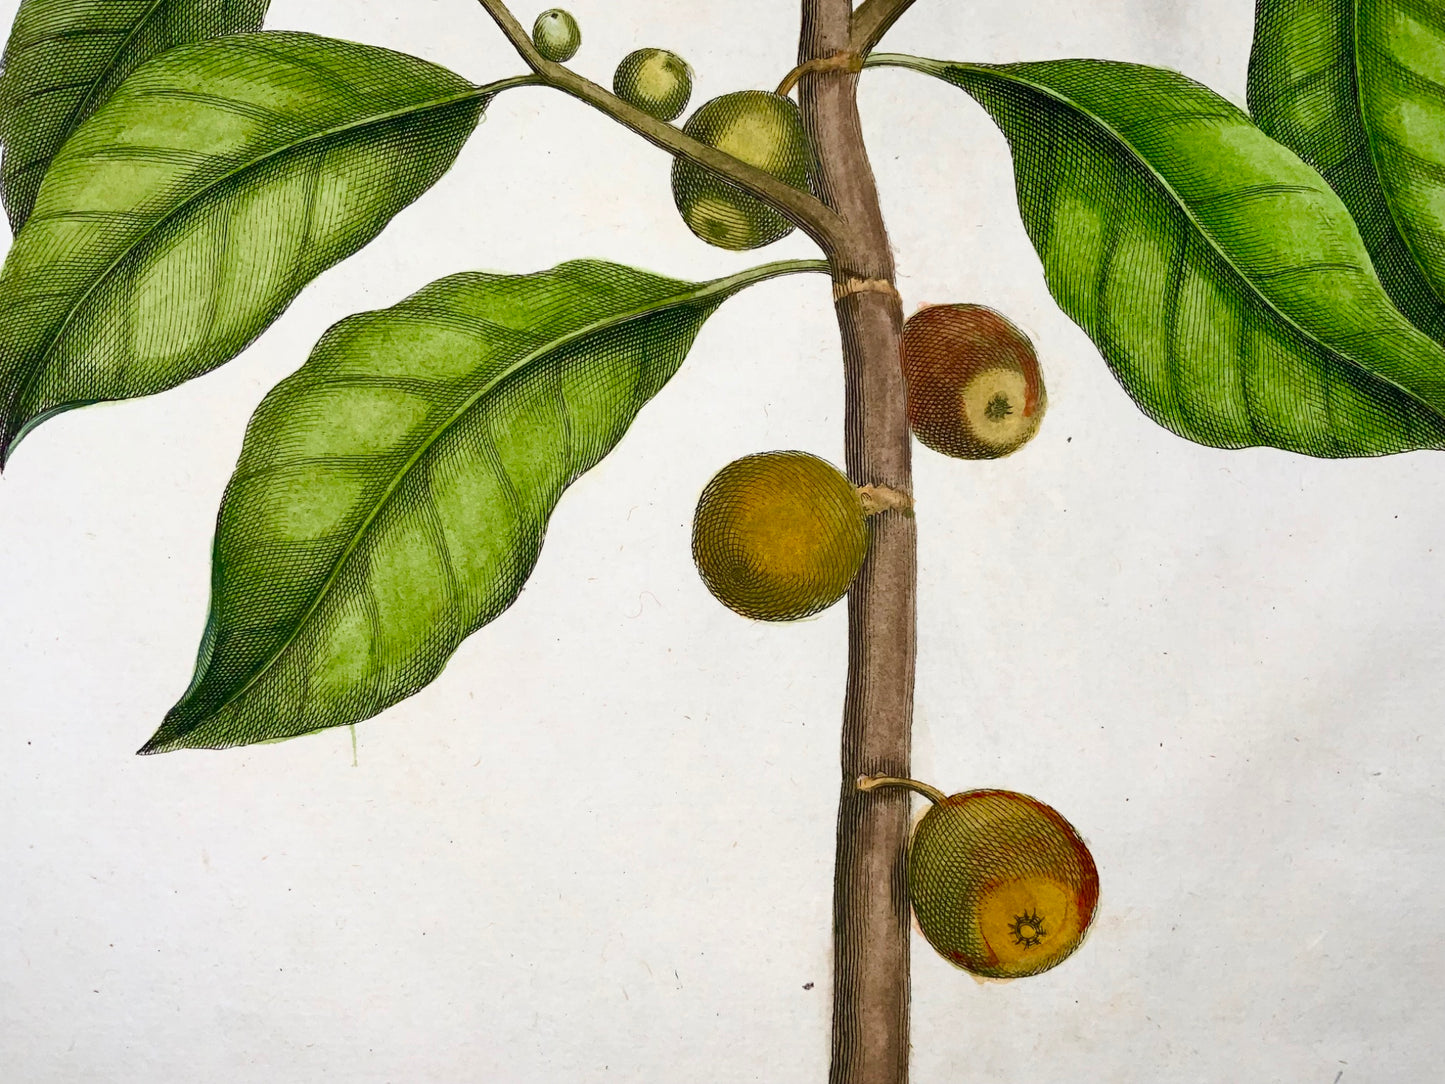 1741 Figuier, fruit, Rumpf, Herbarium Amboinense, Indonésie, couleur main, folio